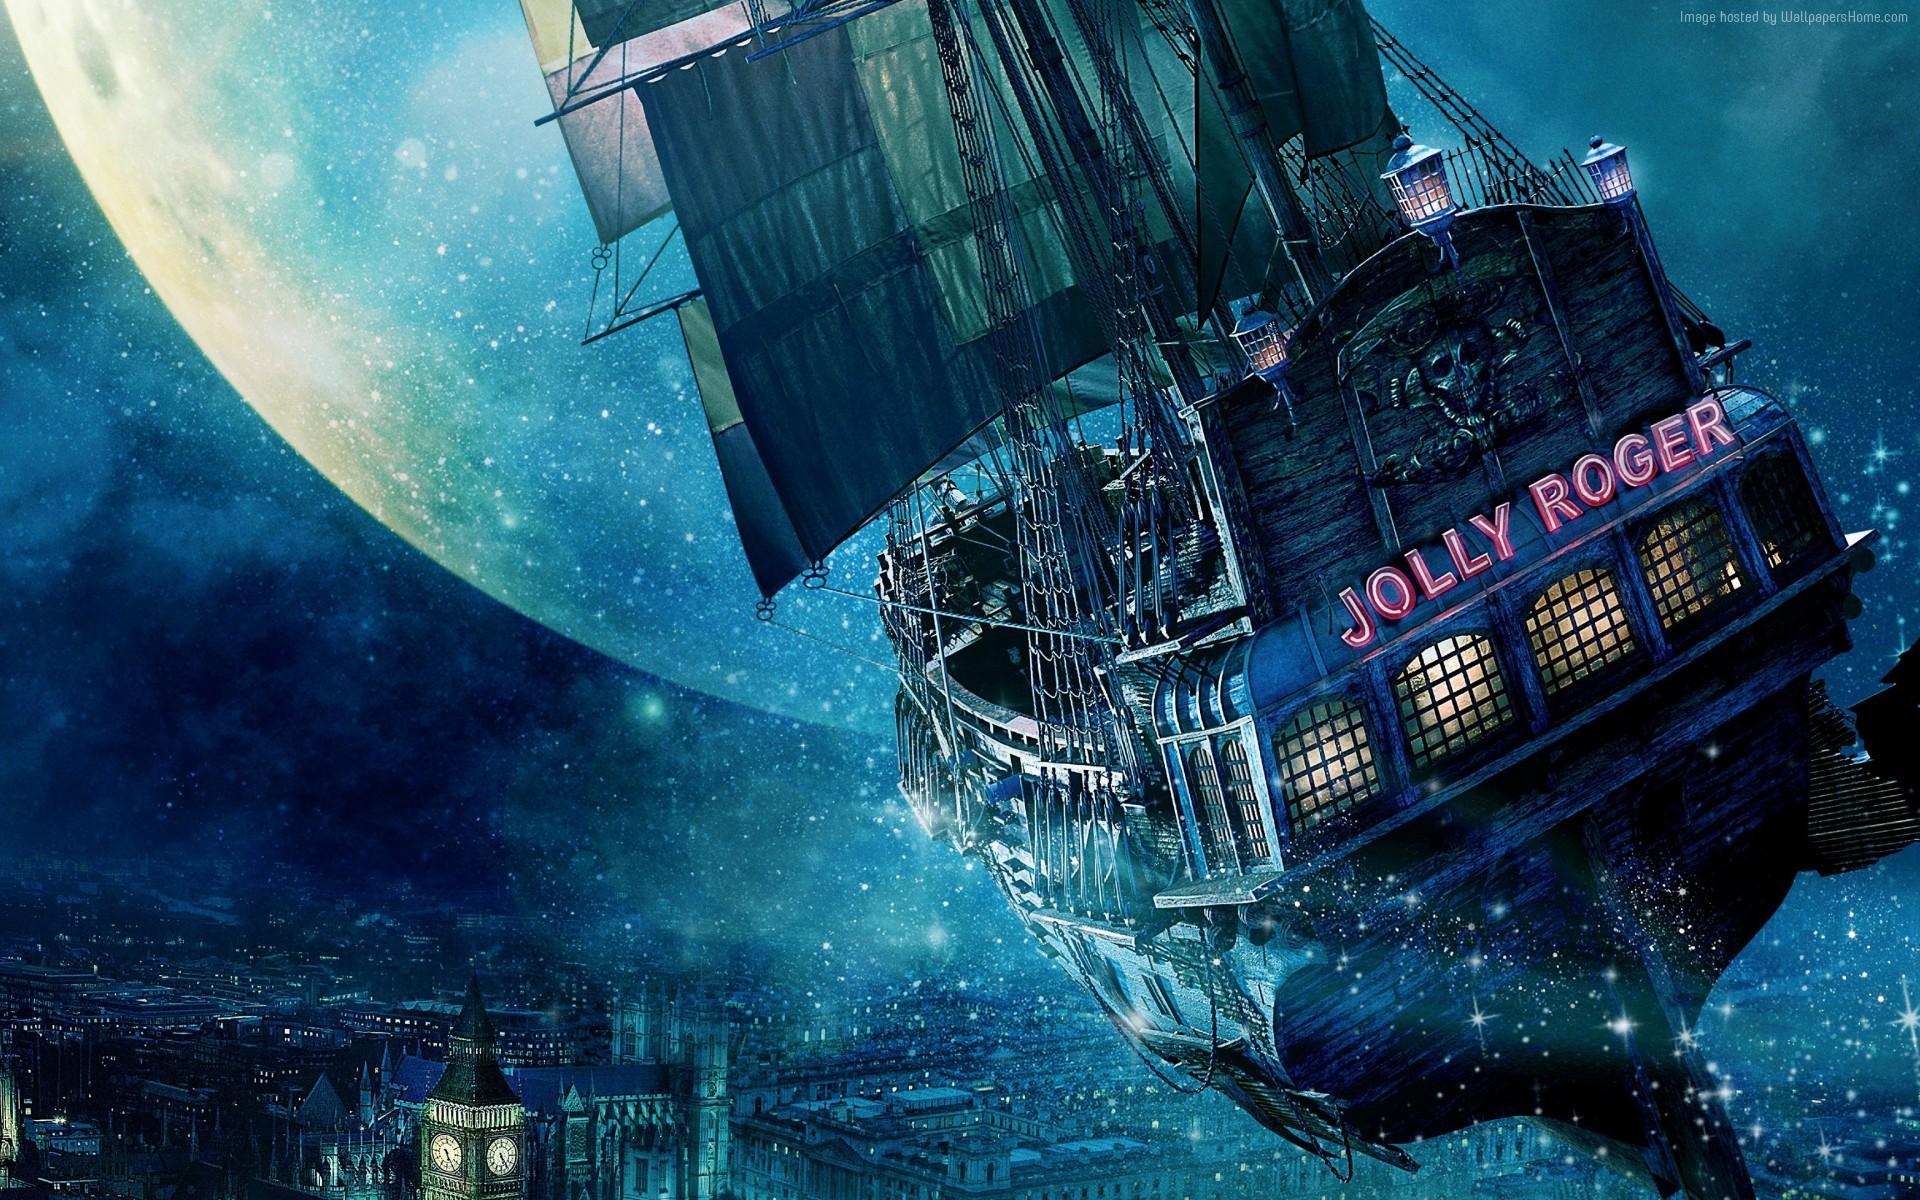 HD wallpaper, Peter Pan, Jolly Roger, Fantasy Art, Vehicle, Digital Art, Moon, Sailing Ship, Ship